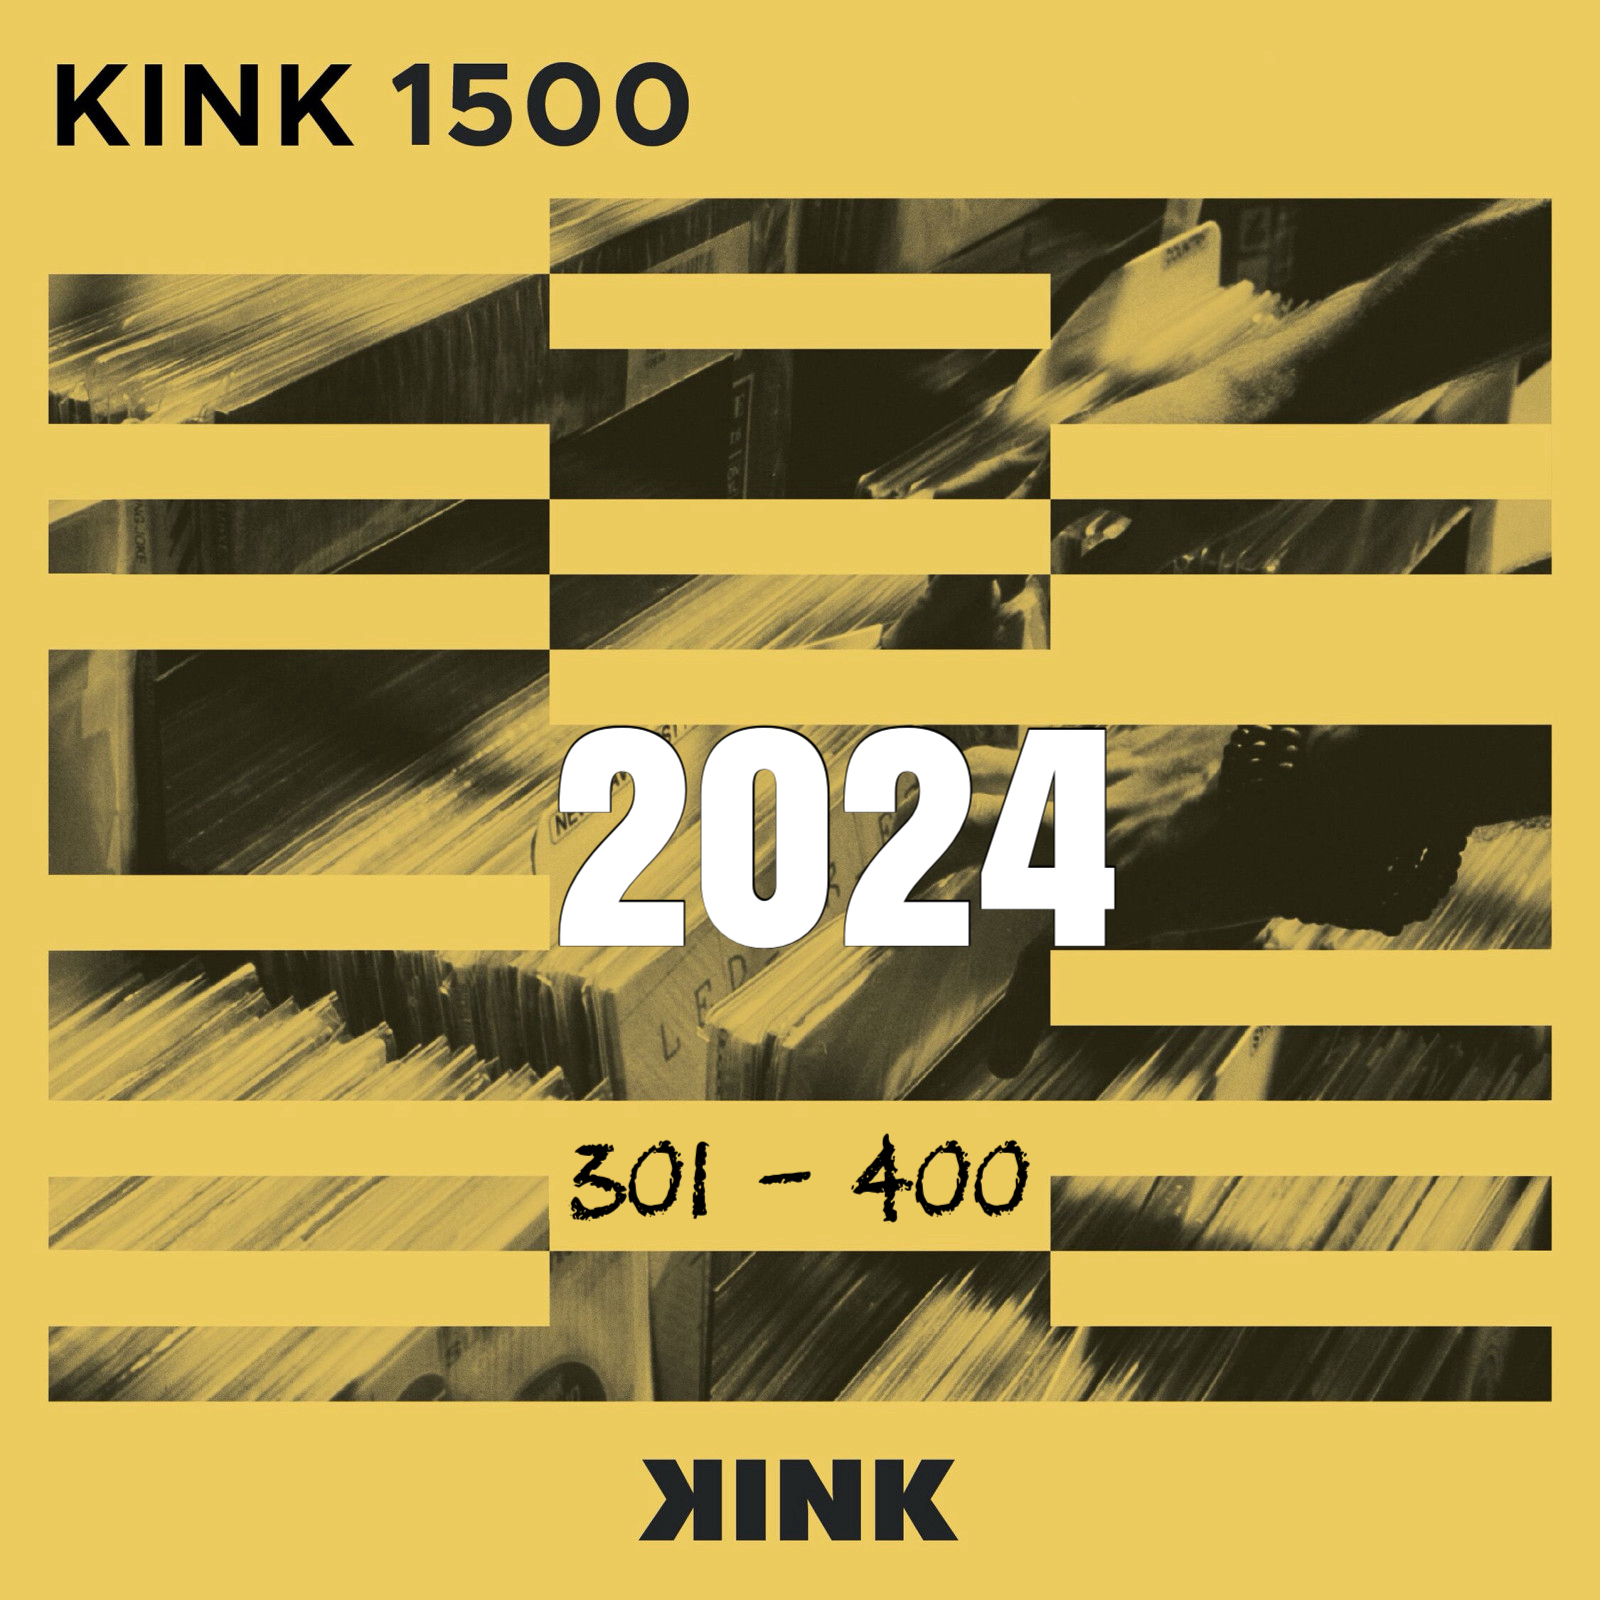 VA - Kink 1500 (2024) (0301- 0400)